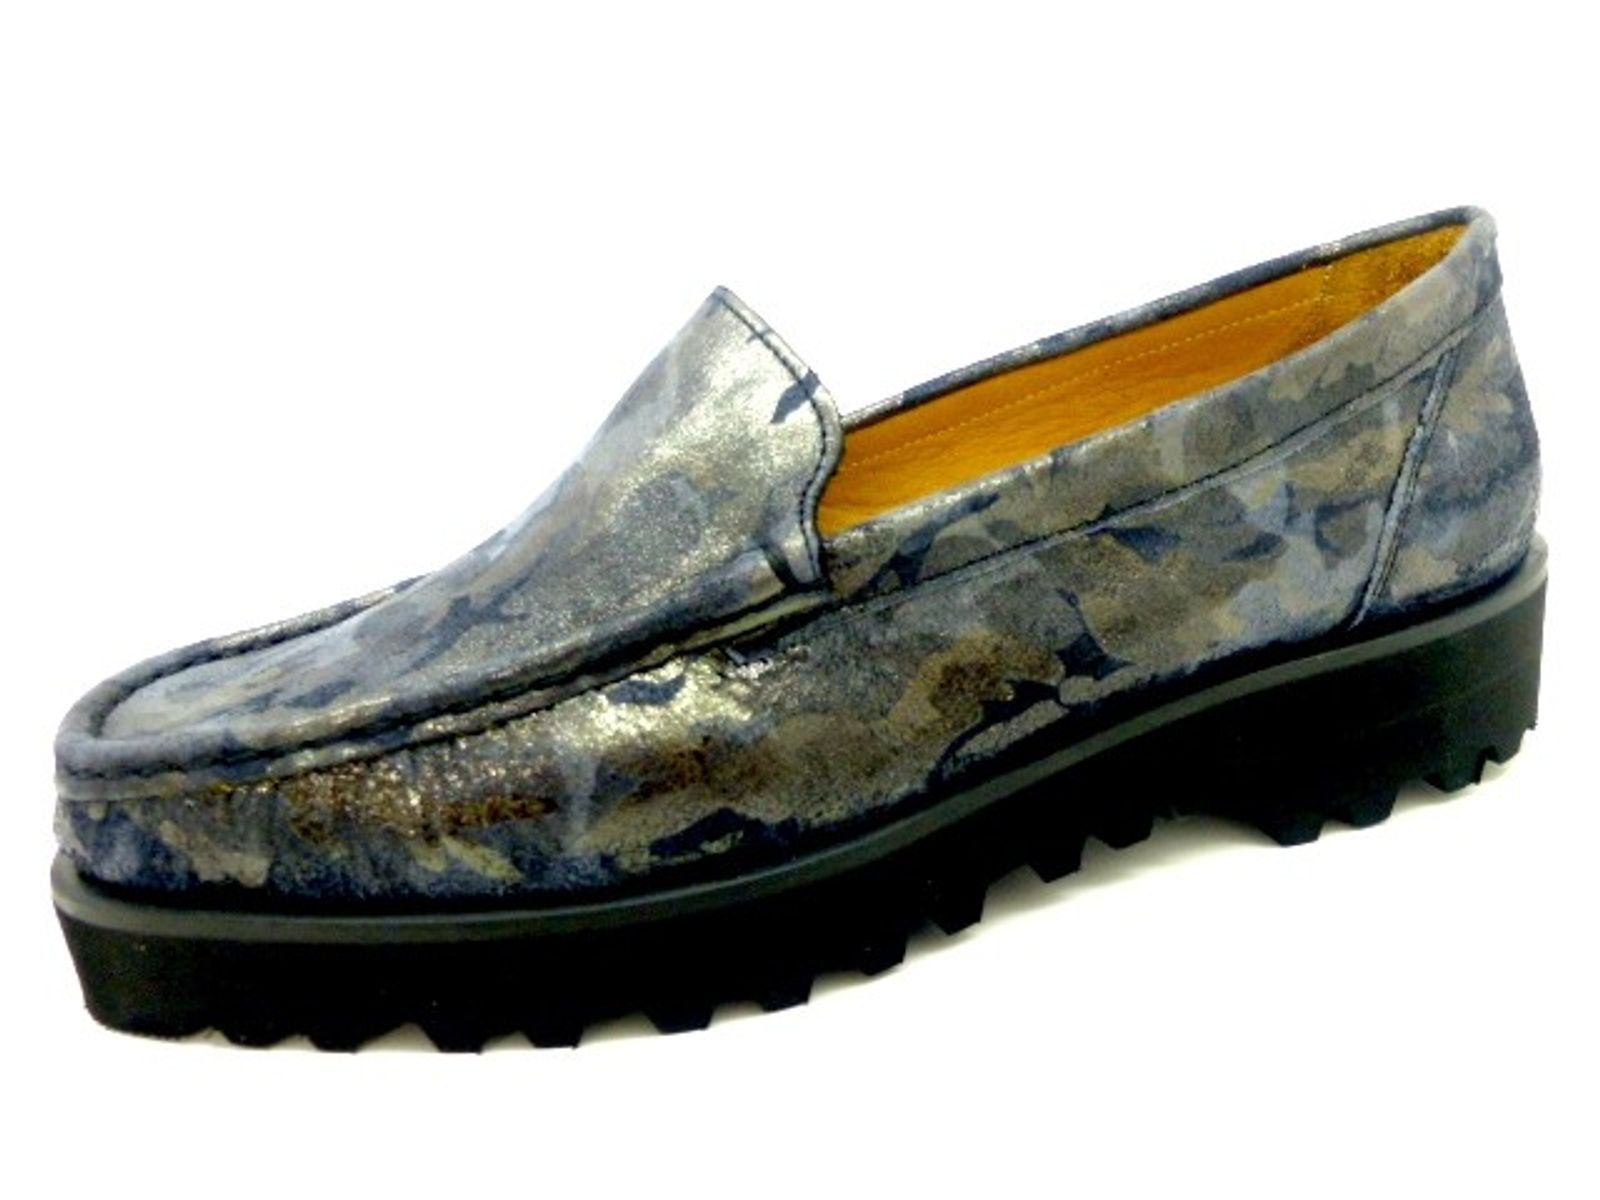 Schuh von SABU, 37